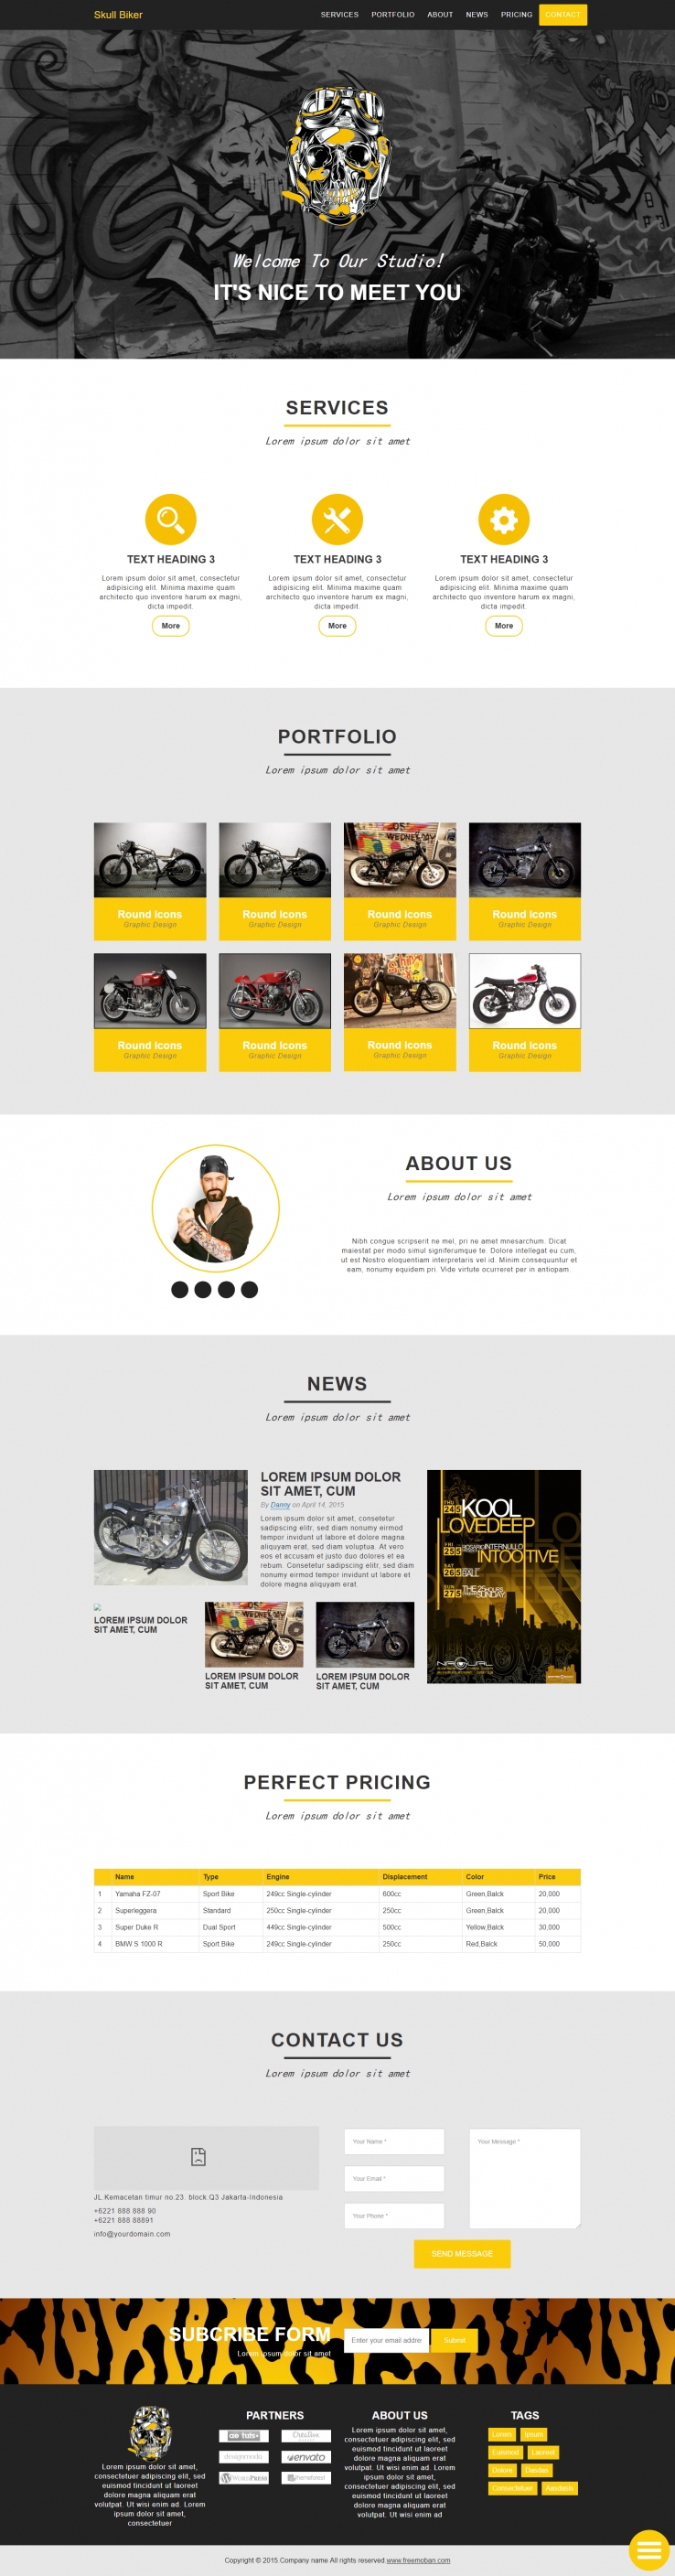 黄色宽屏风格的朋克摩托车企业网站模板